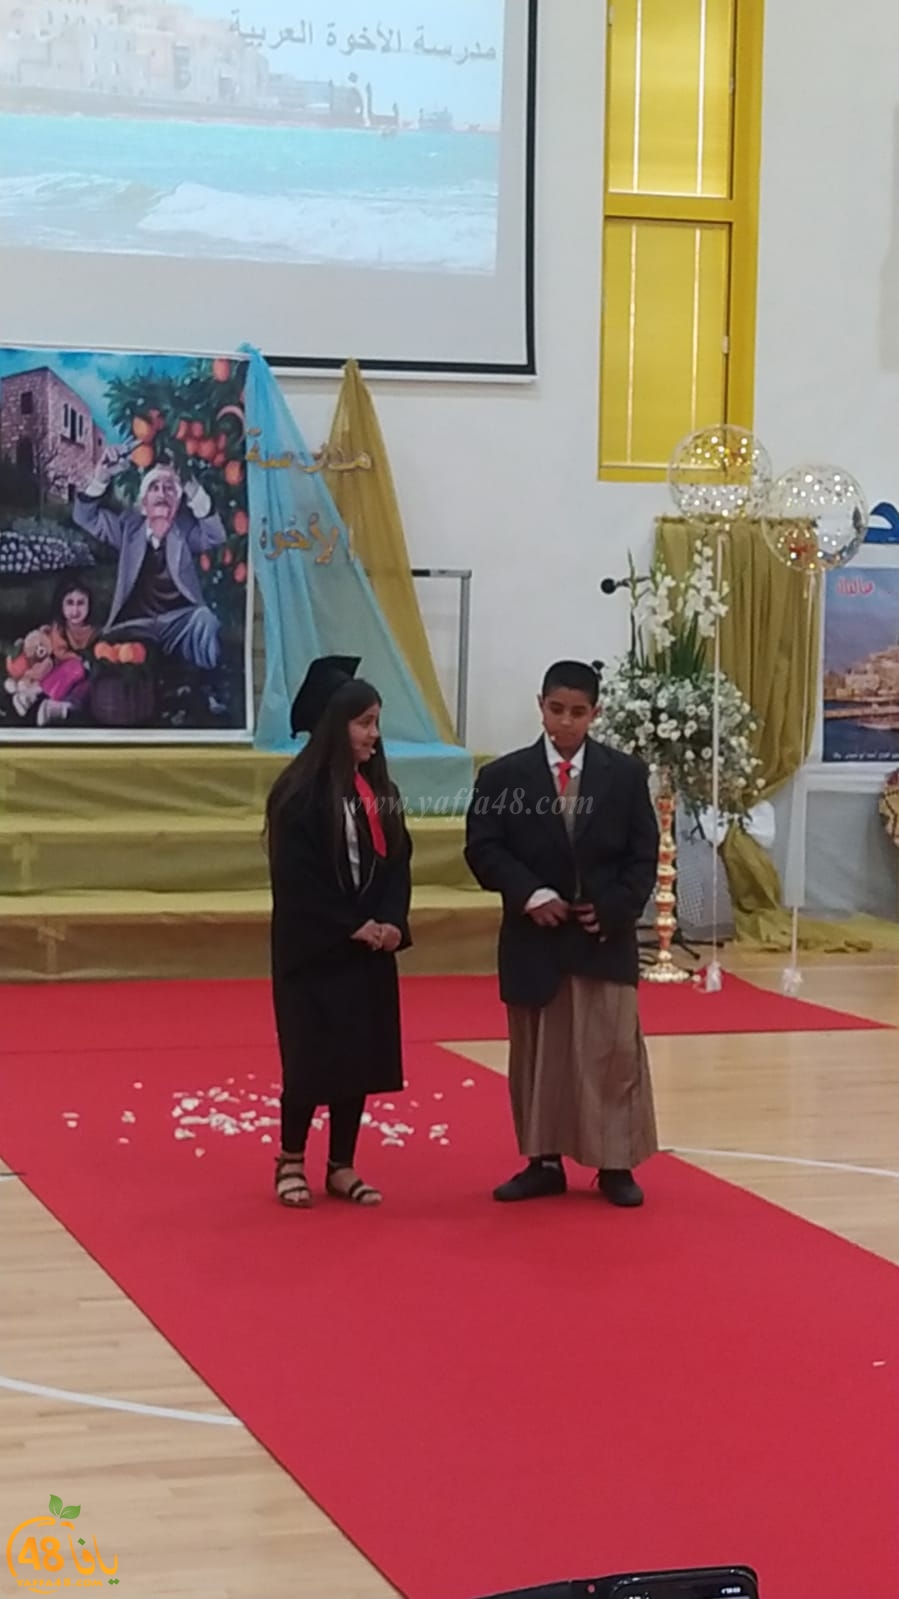  يافا: مدرسة الأخوة تُكرم الطفل محمد جنتازي خلال حفل التخرّج